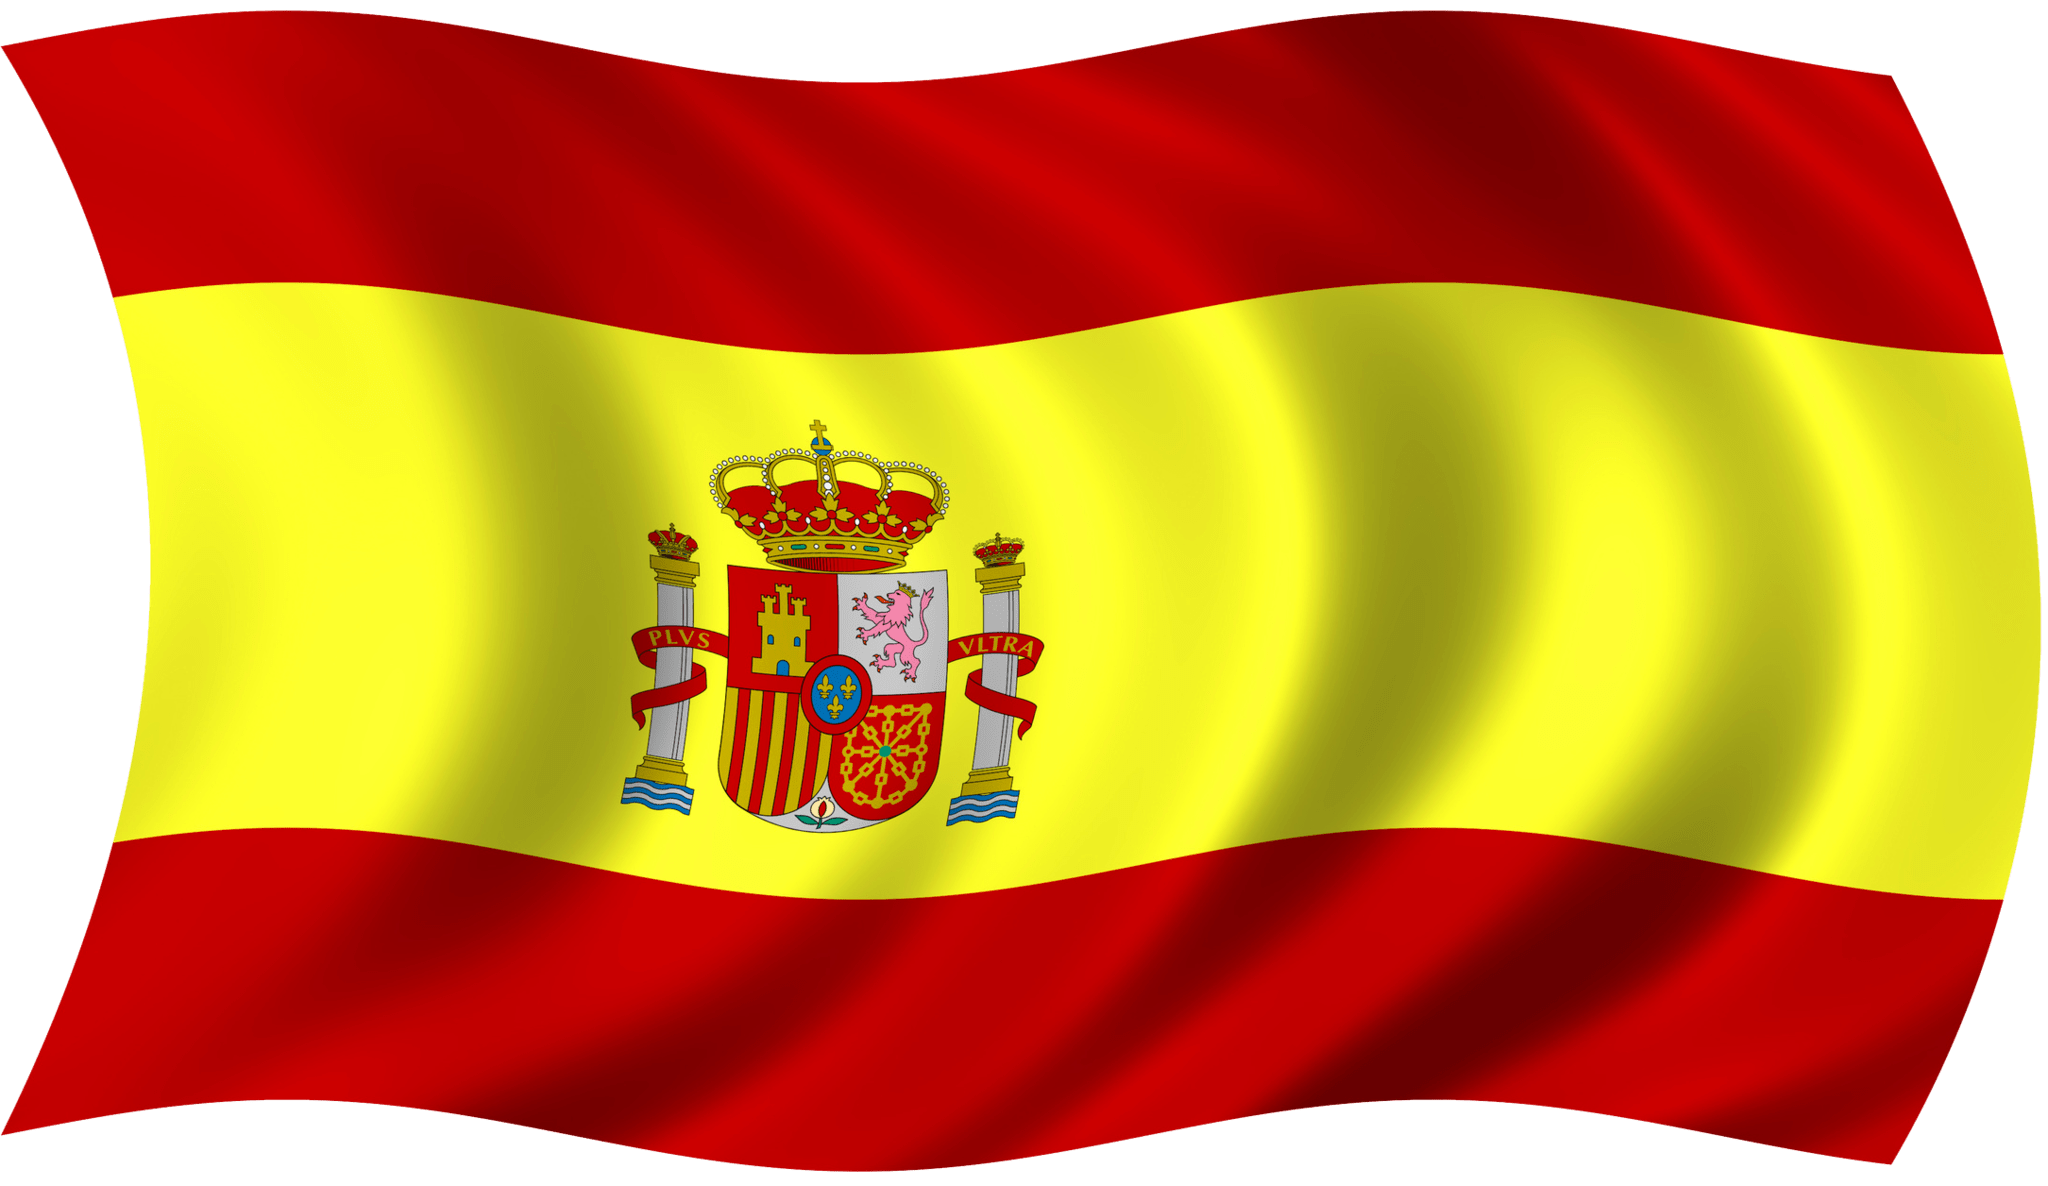 Bandera republicana espana